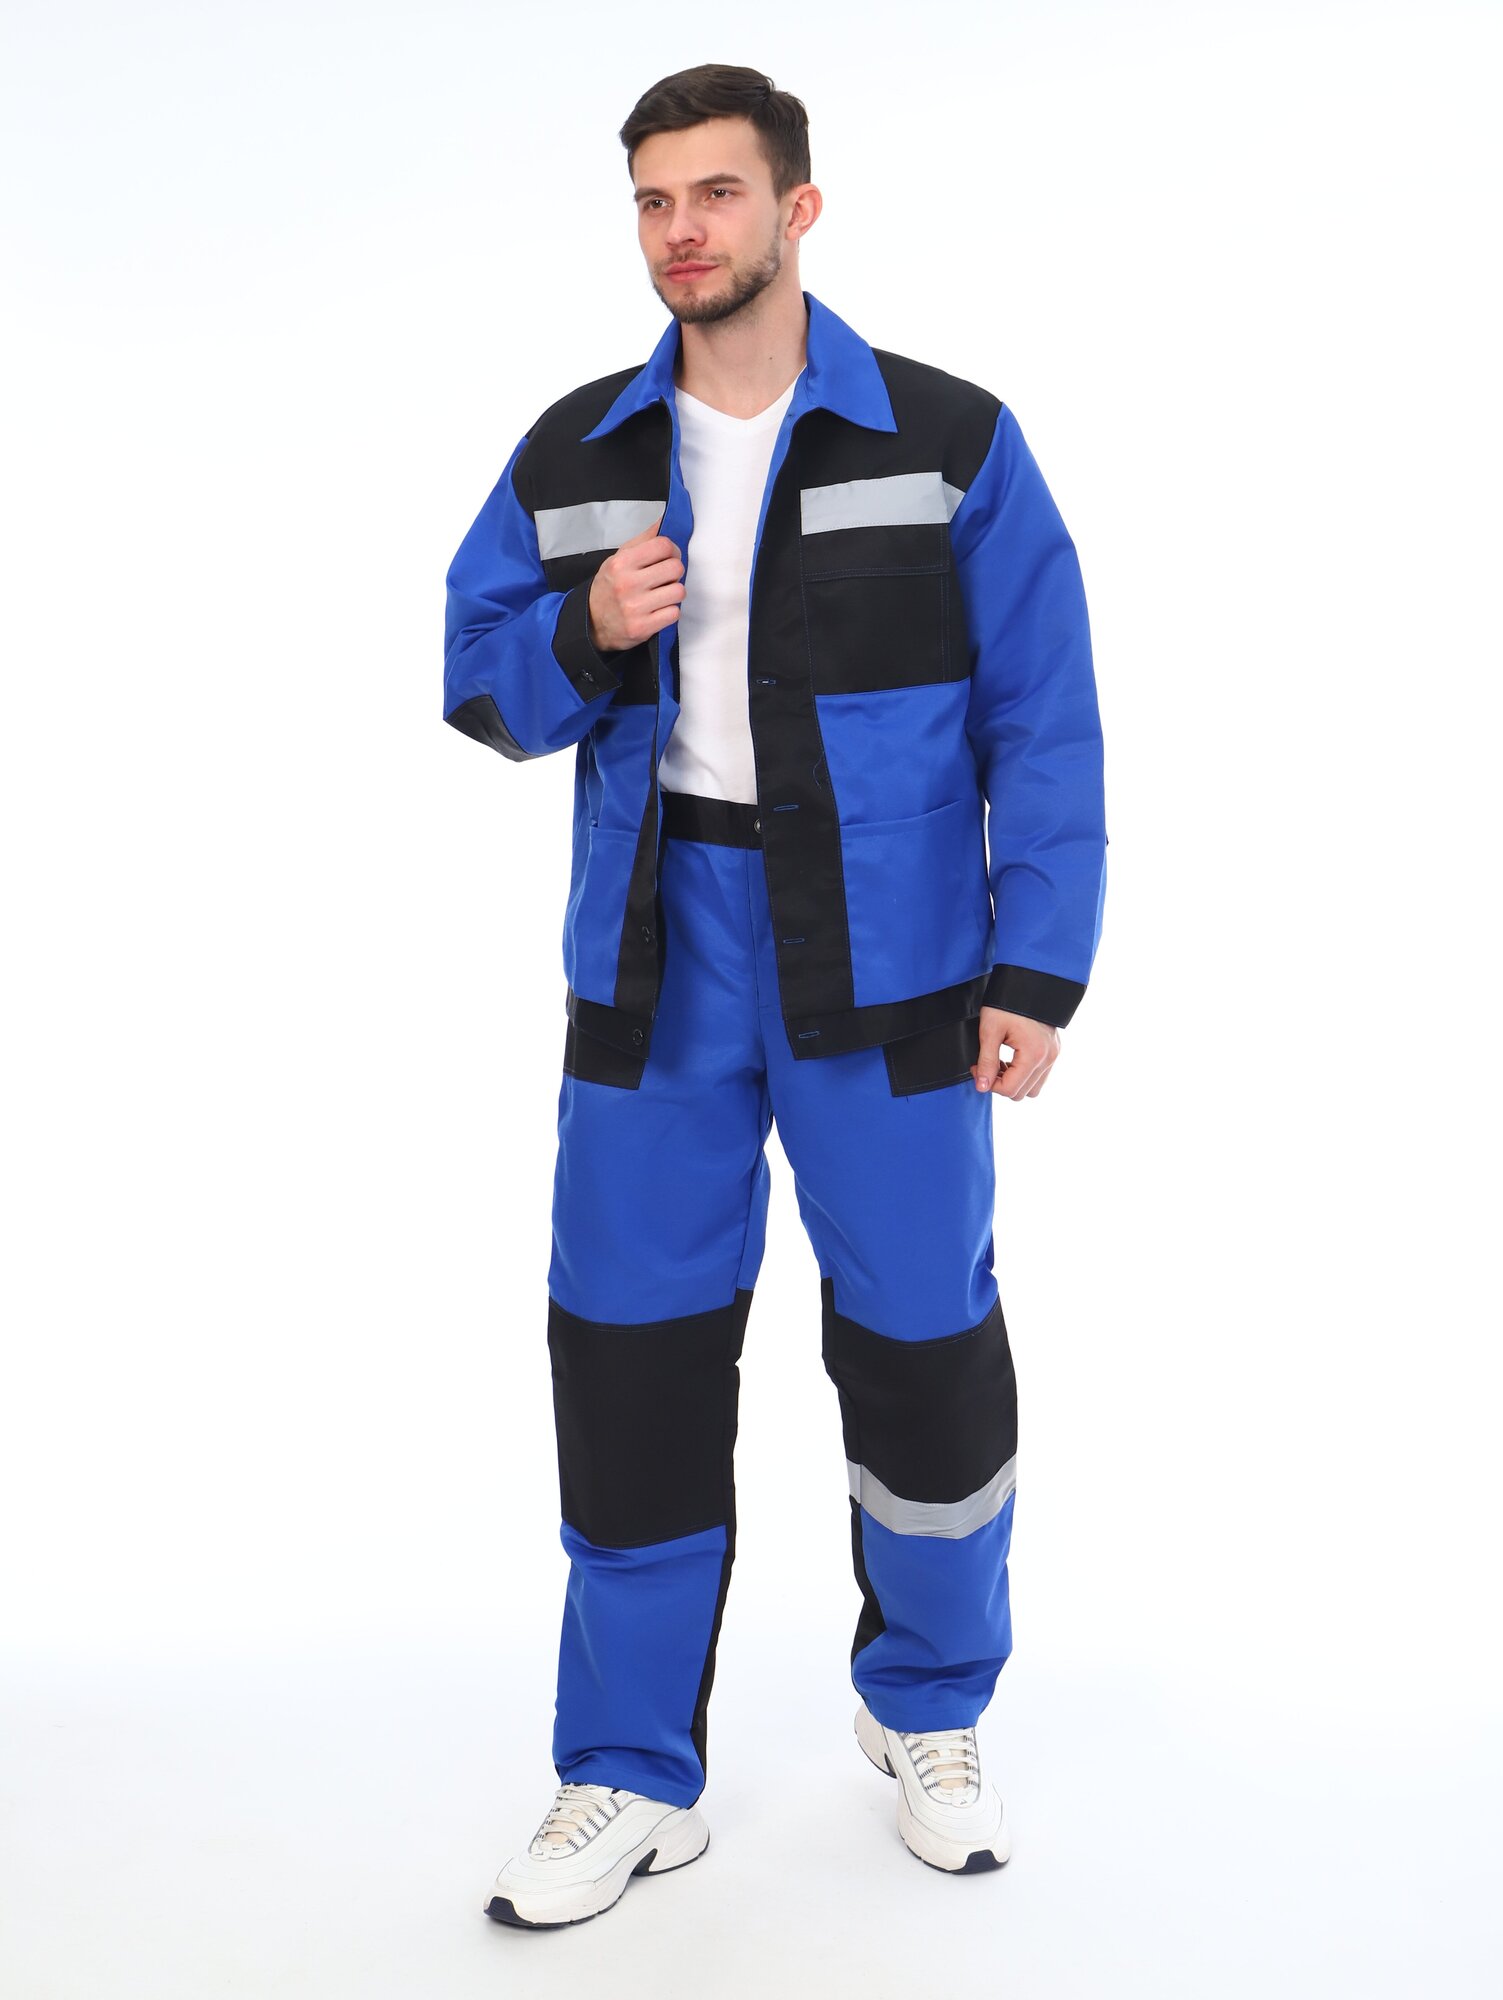 Костюм мужской рабочий (куртка + брюки), спецовка для ремонта, строительства, дачи, цвет синий/черный, размер 56-58 (170-176)